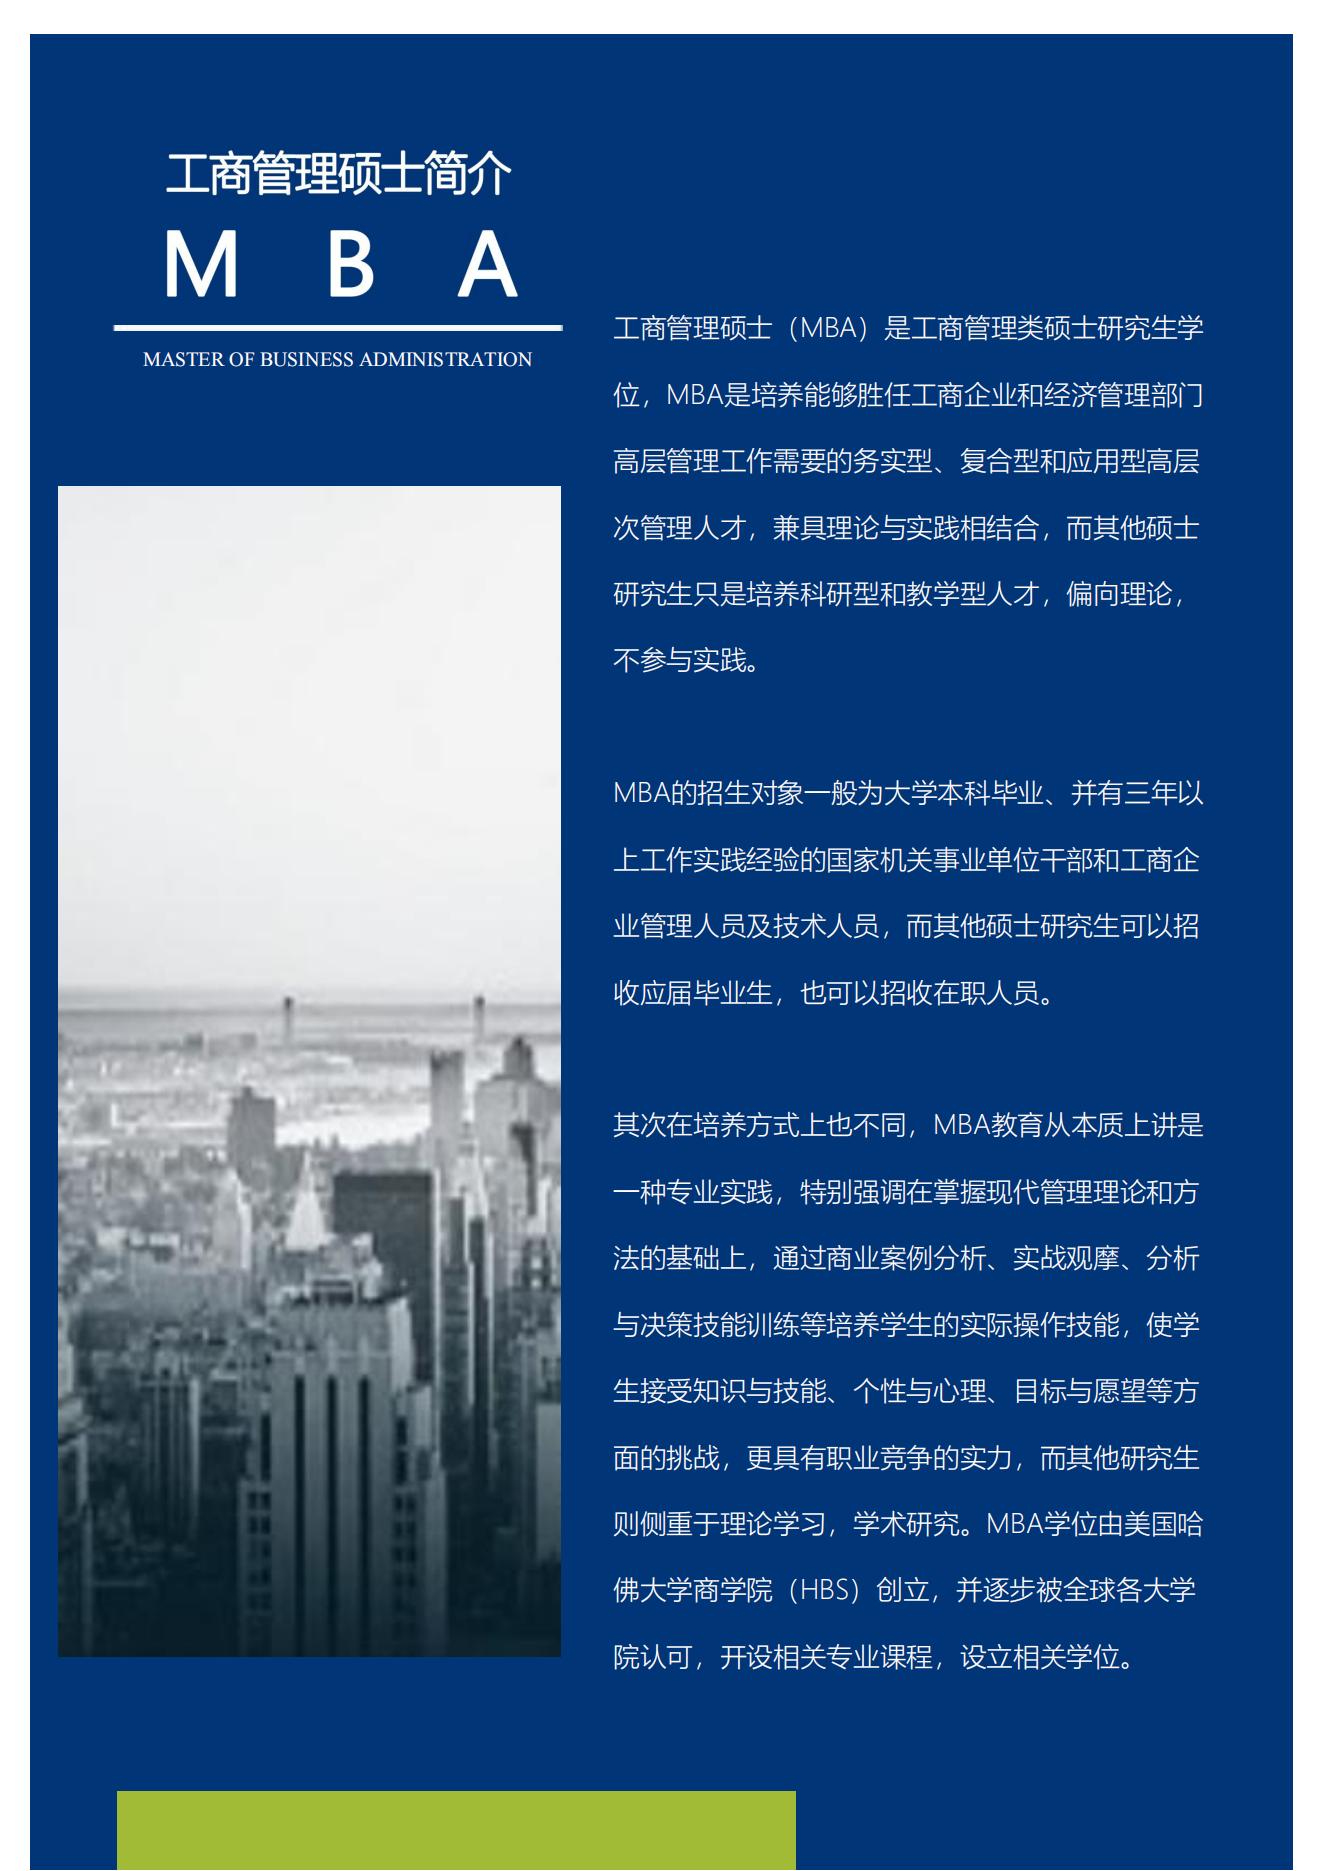 甘肃农大MBA、MPA招生简章2_01